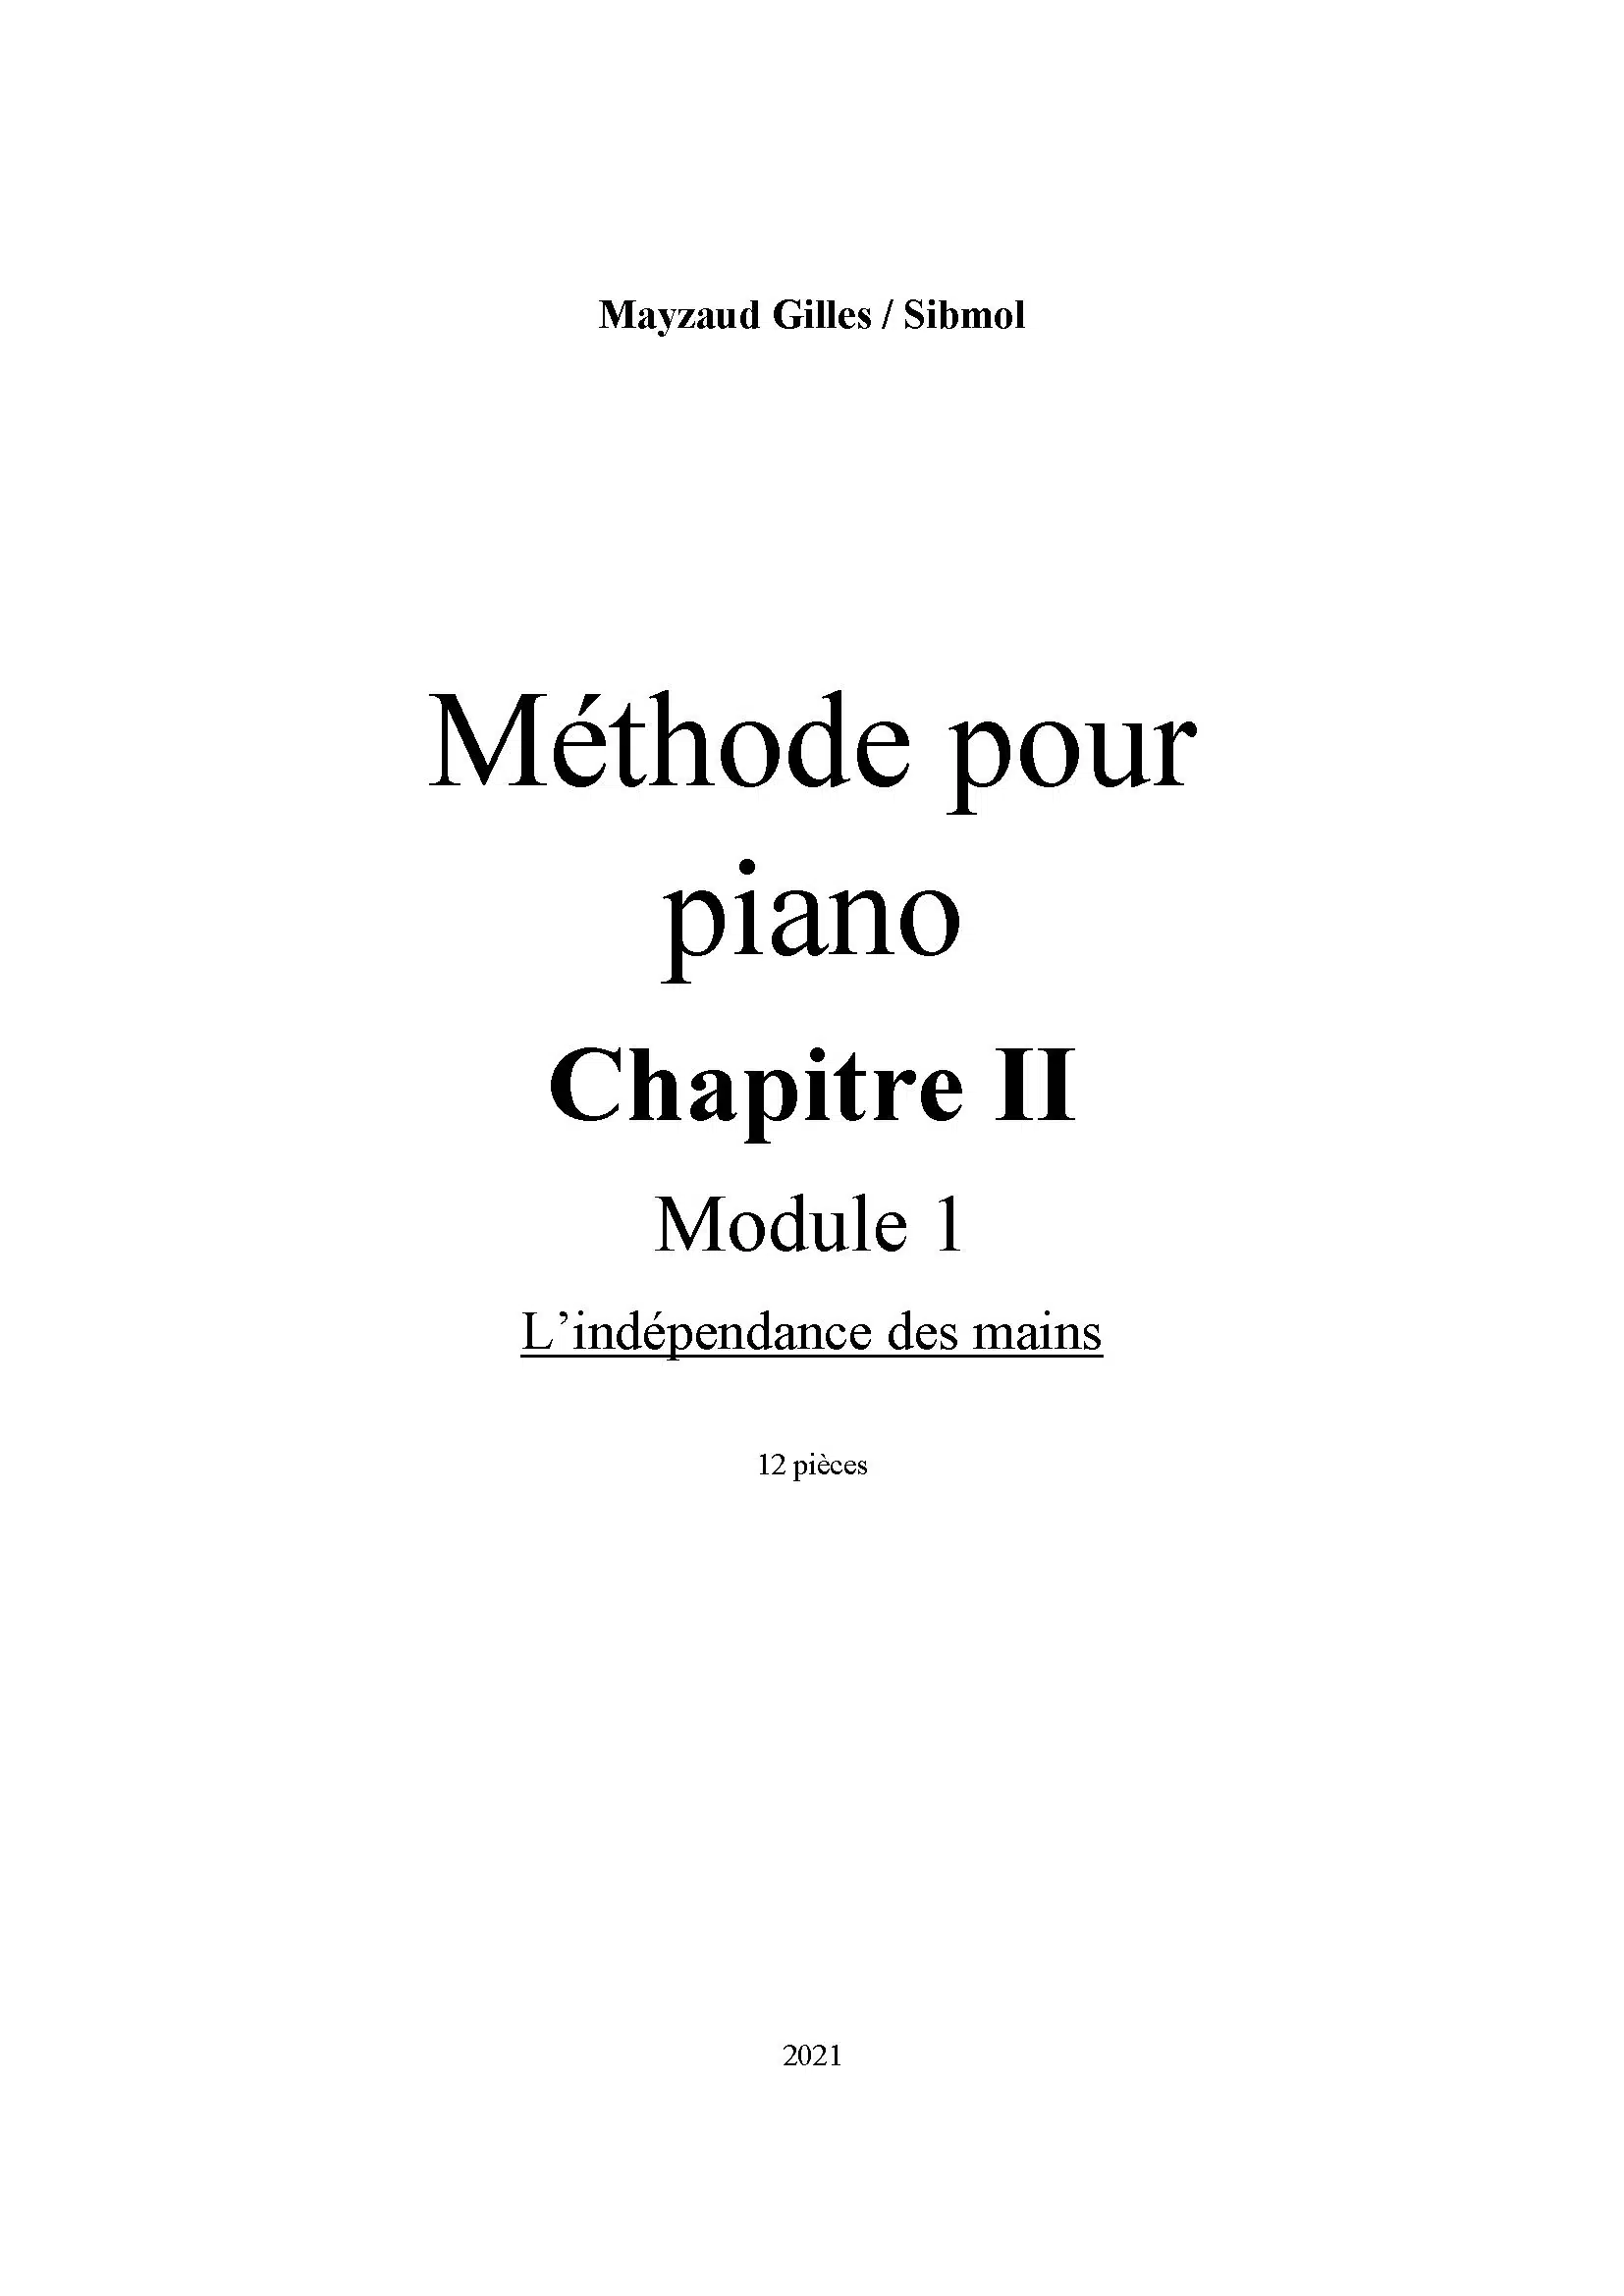 Chapitre II – Module 1 – L'indépendance des mains – Boutique du cahier du  pianiste